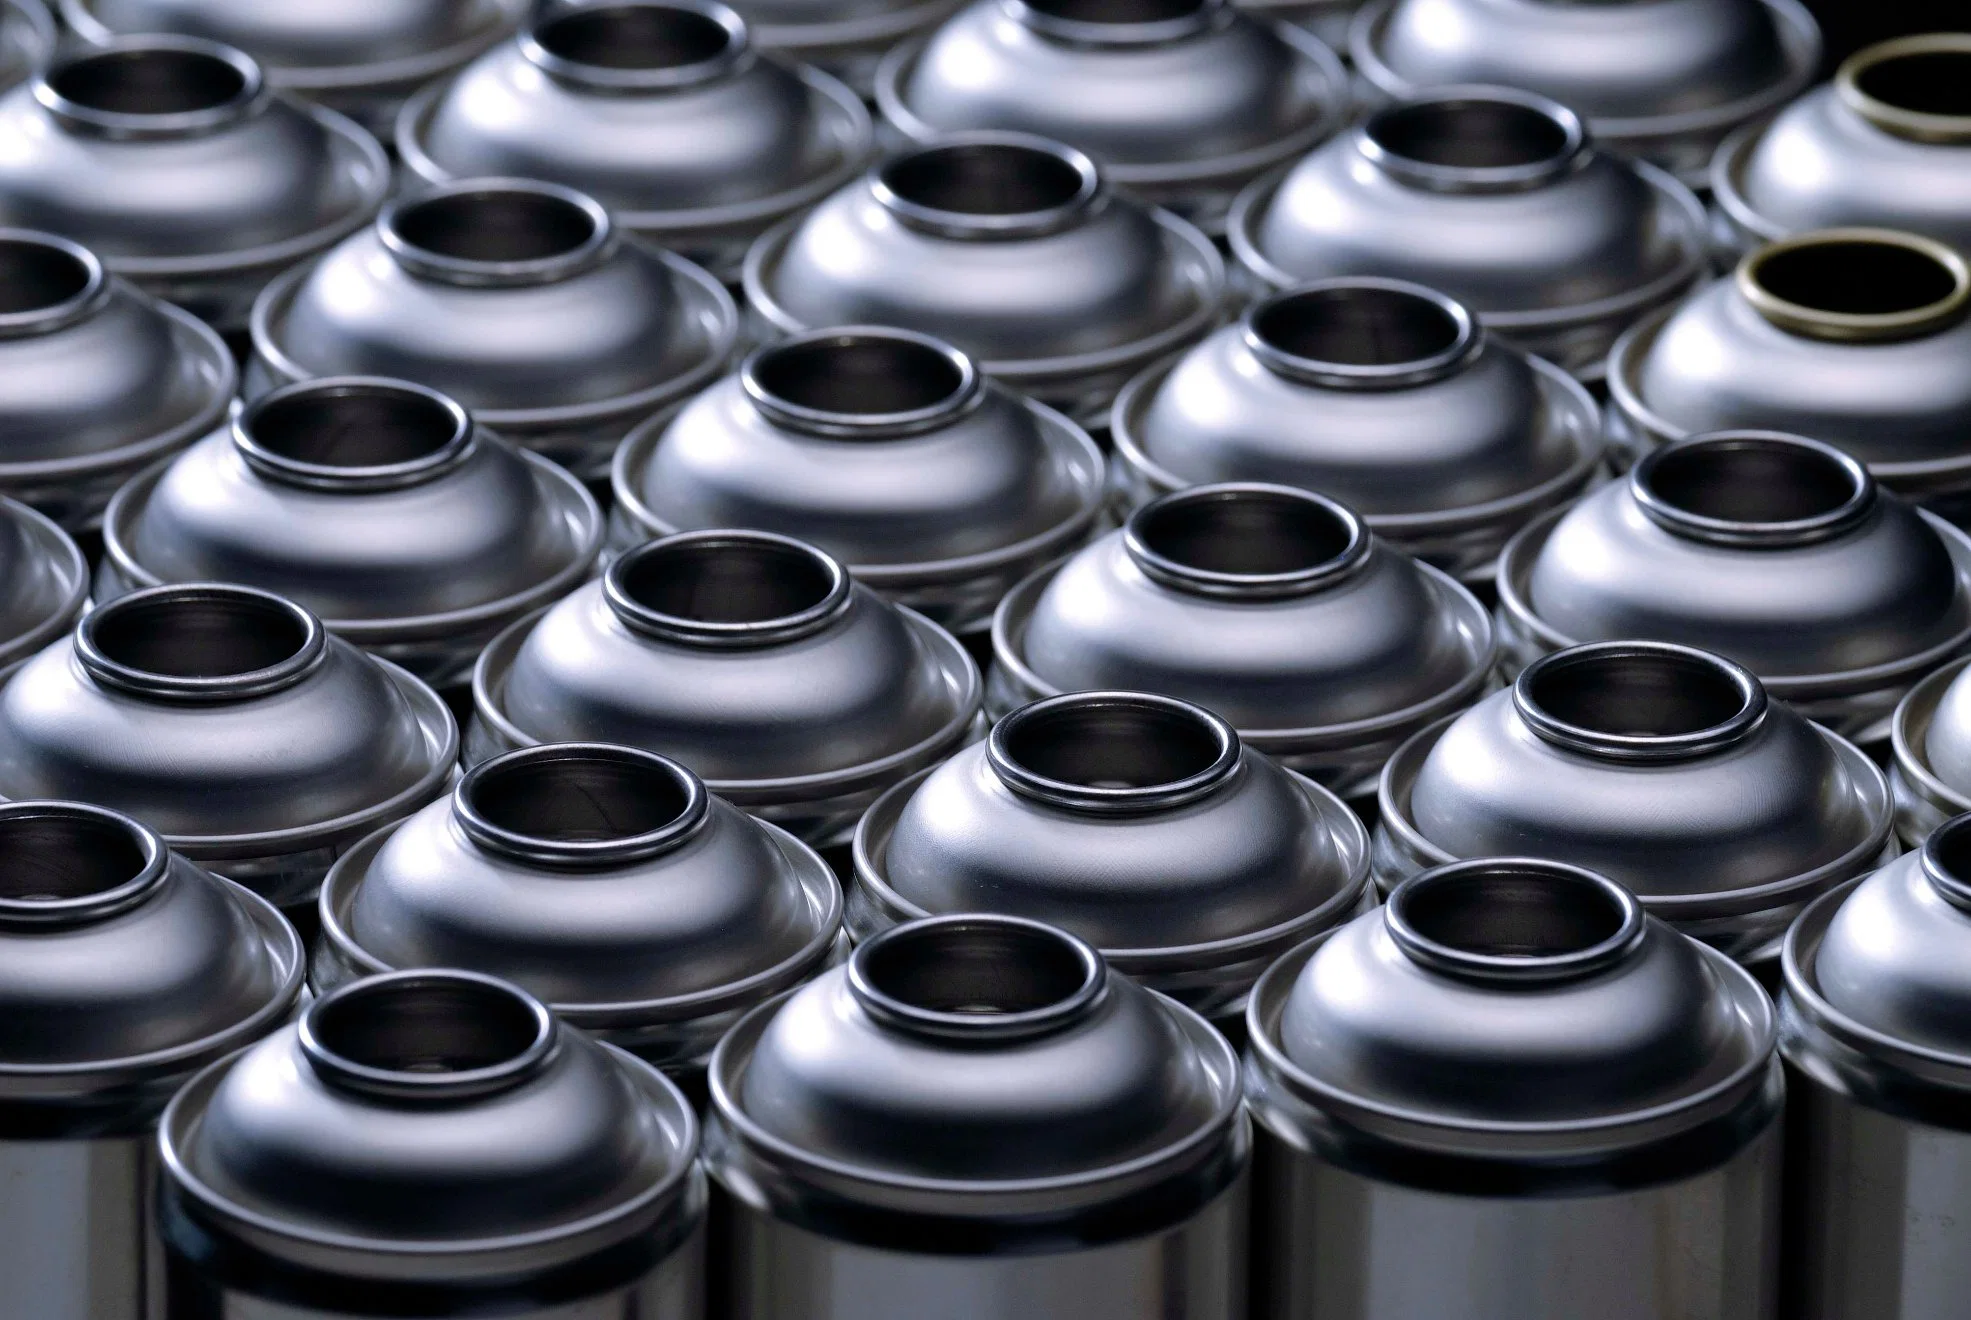 Top Seller de la fábrica produce 52 mm de diámetro, latas de aerosol